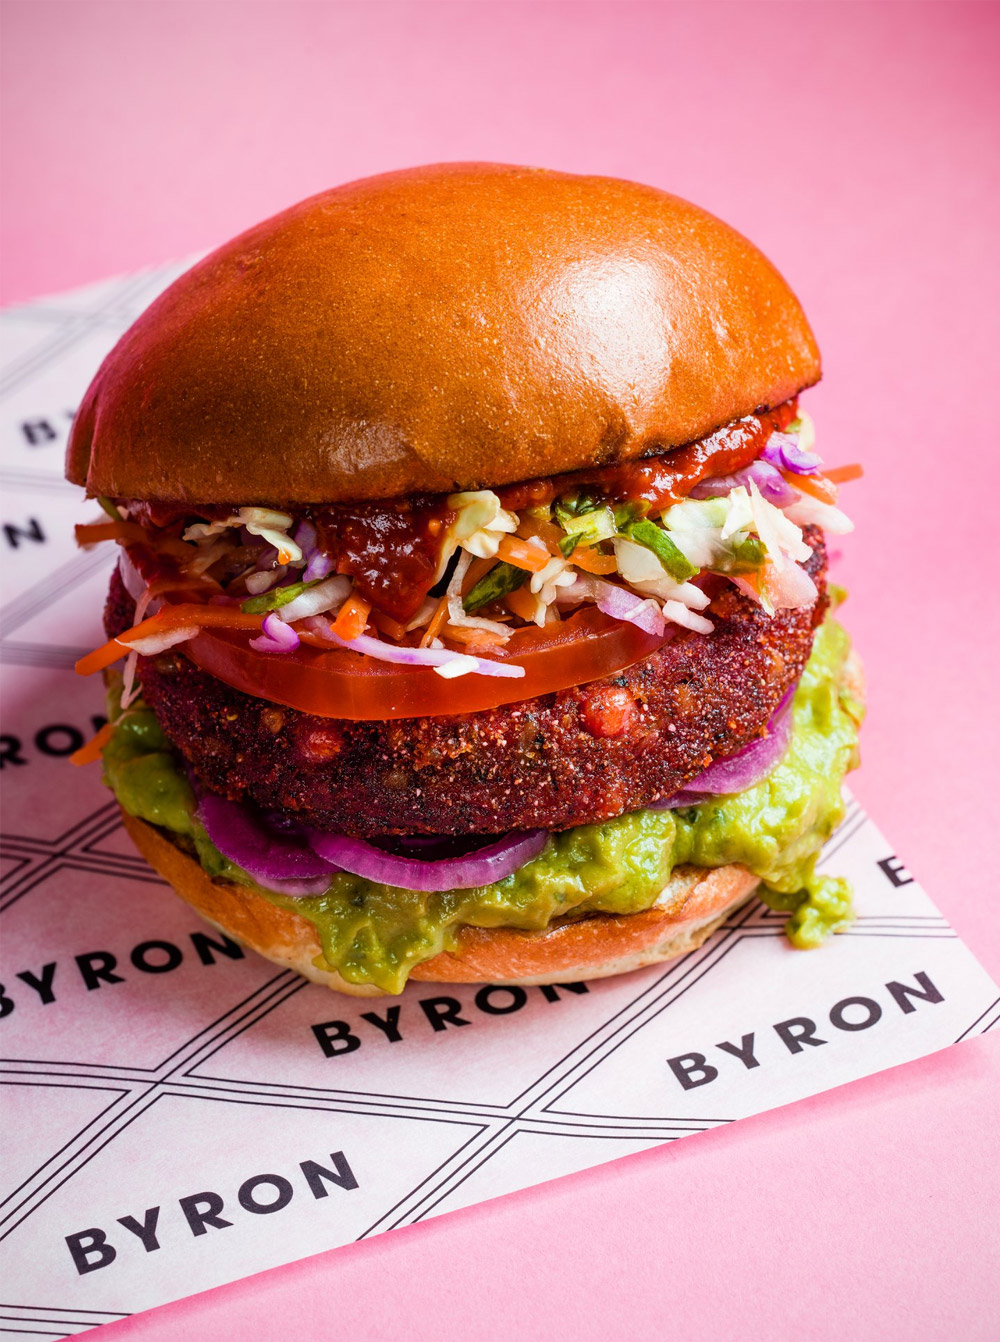 英国知名汉堡连锁品牌 Byron 启用新LOGO